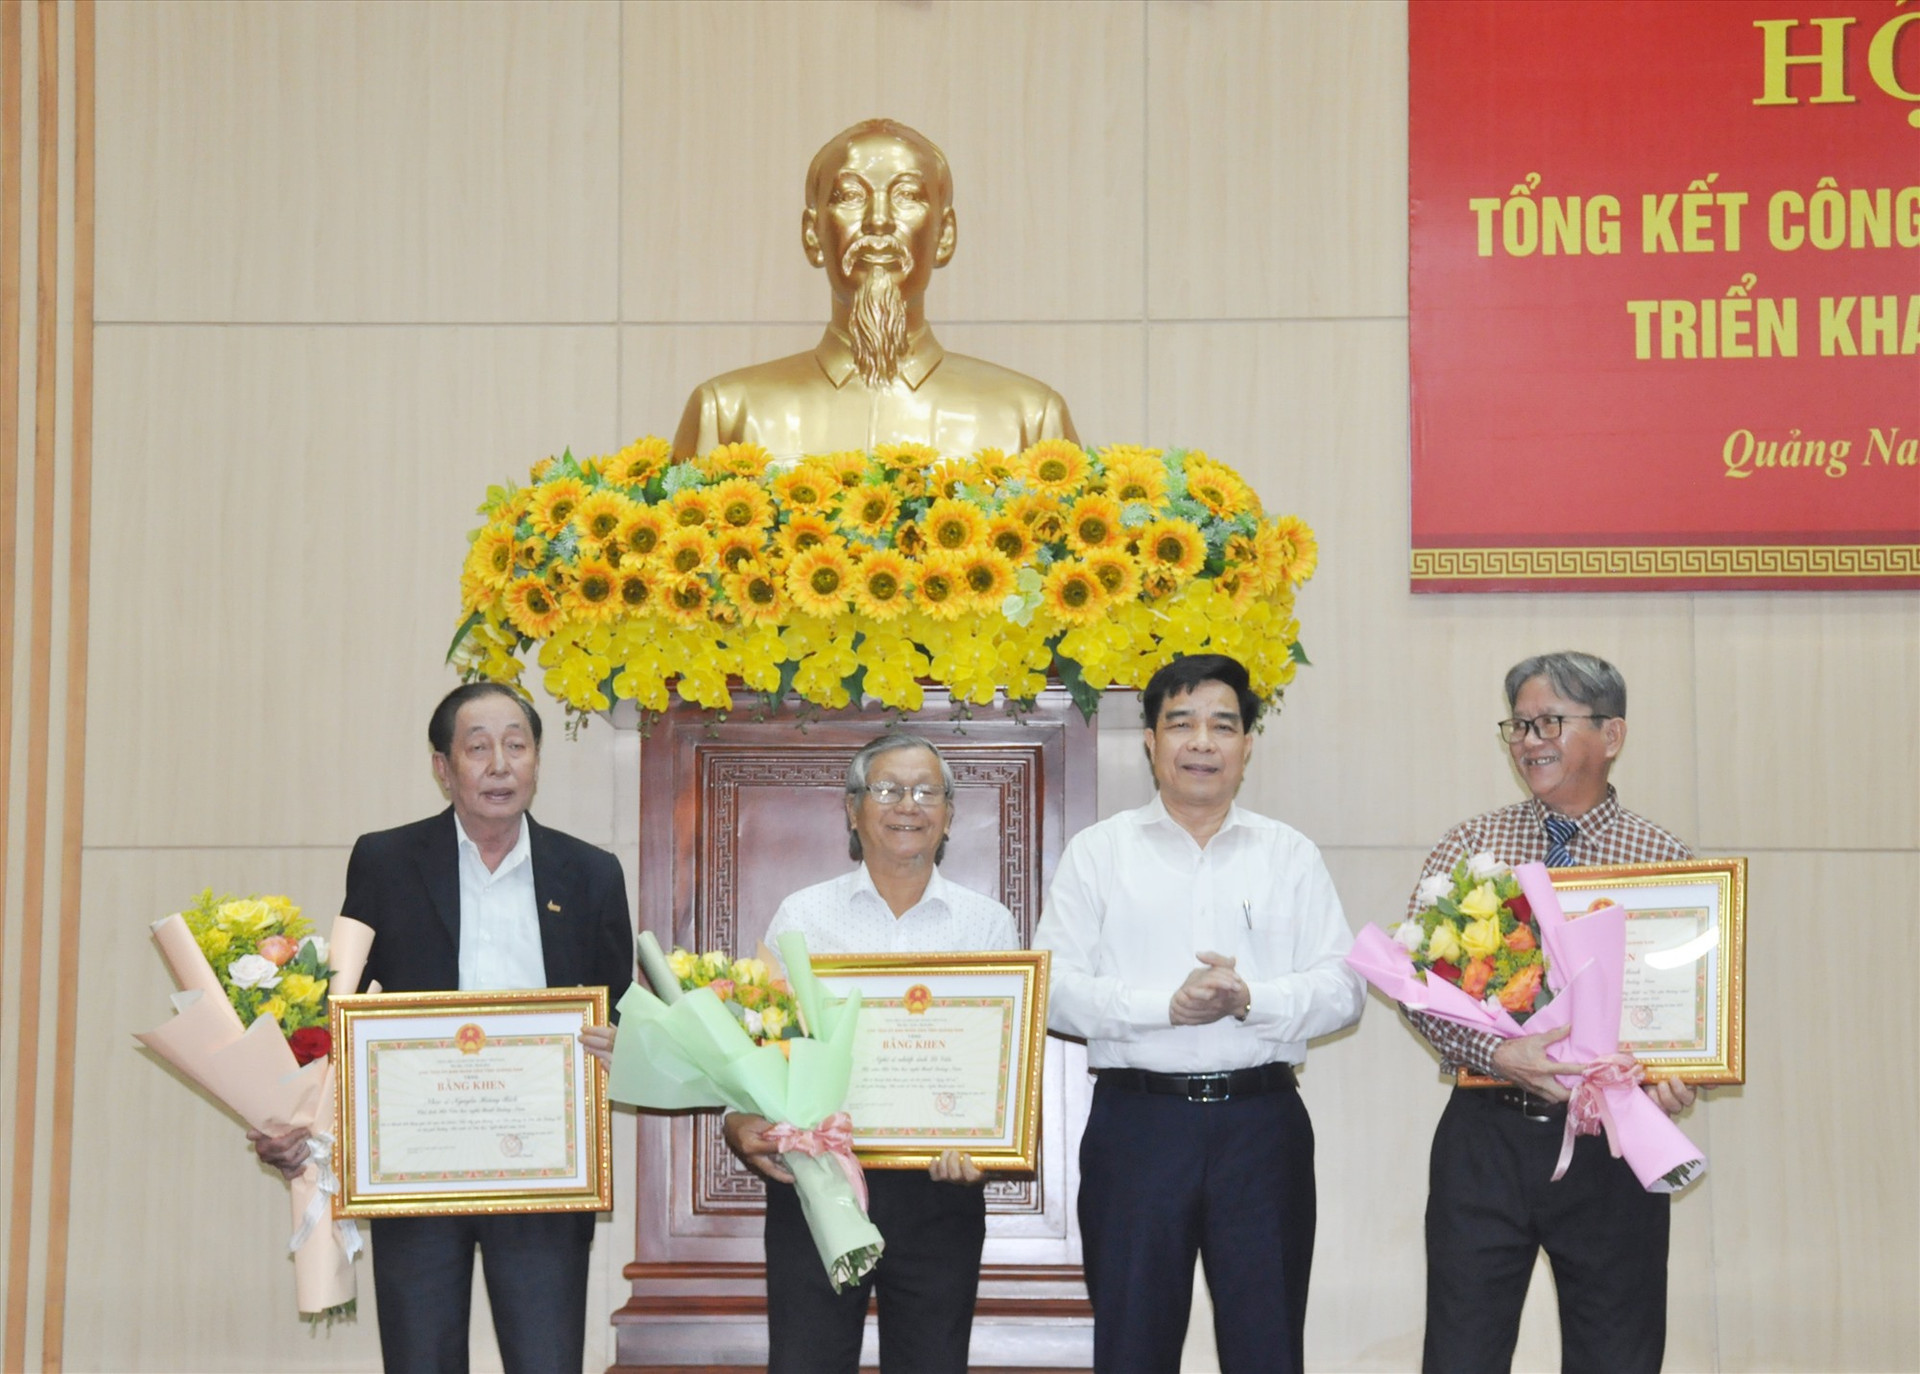 Phó Bí thư Thường trực Tỉnh ủy trao tặng Bằng khen của UBND tỉnh cho 3 cá nhân đoạt giải thưởng Nhà nước về văn học - nghệ thuật. Ảnh: N.Đ